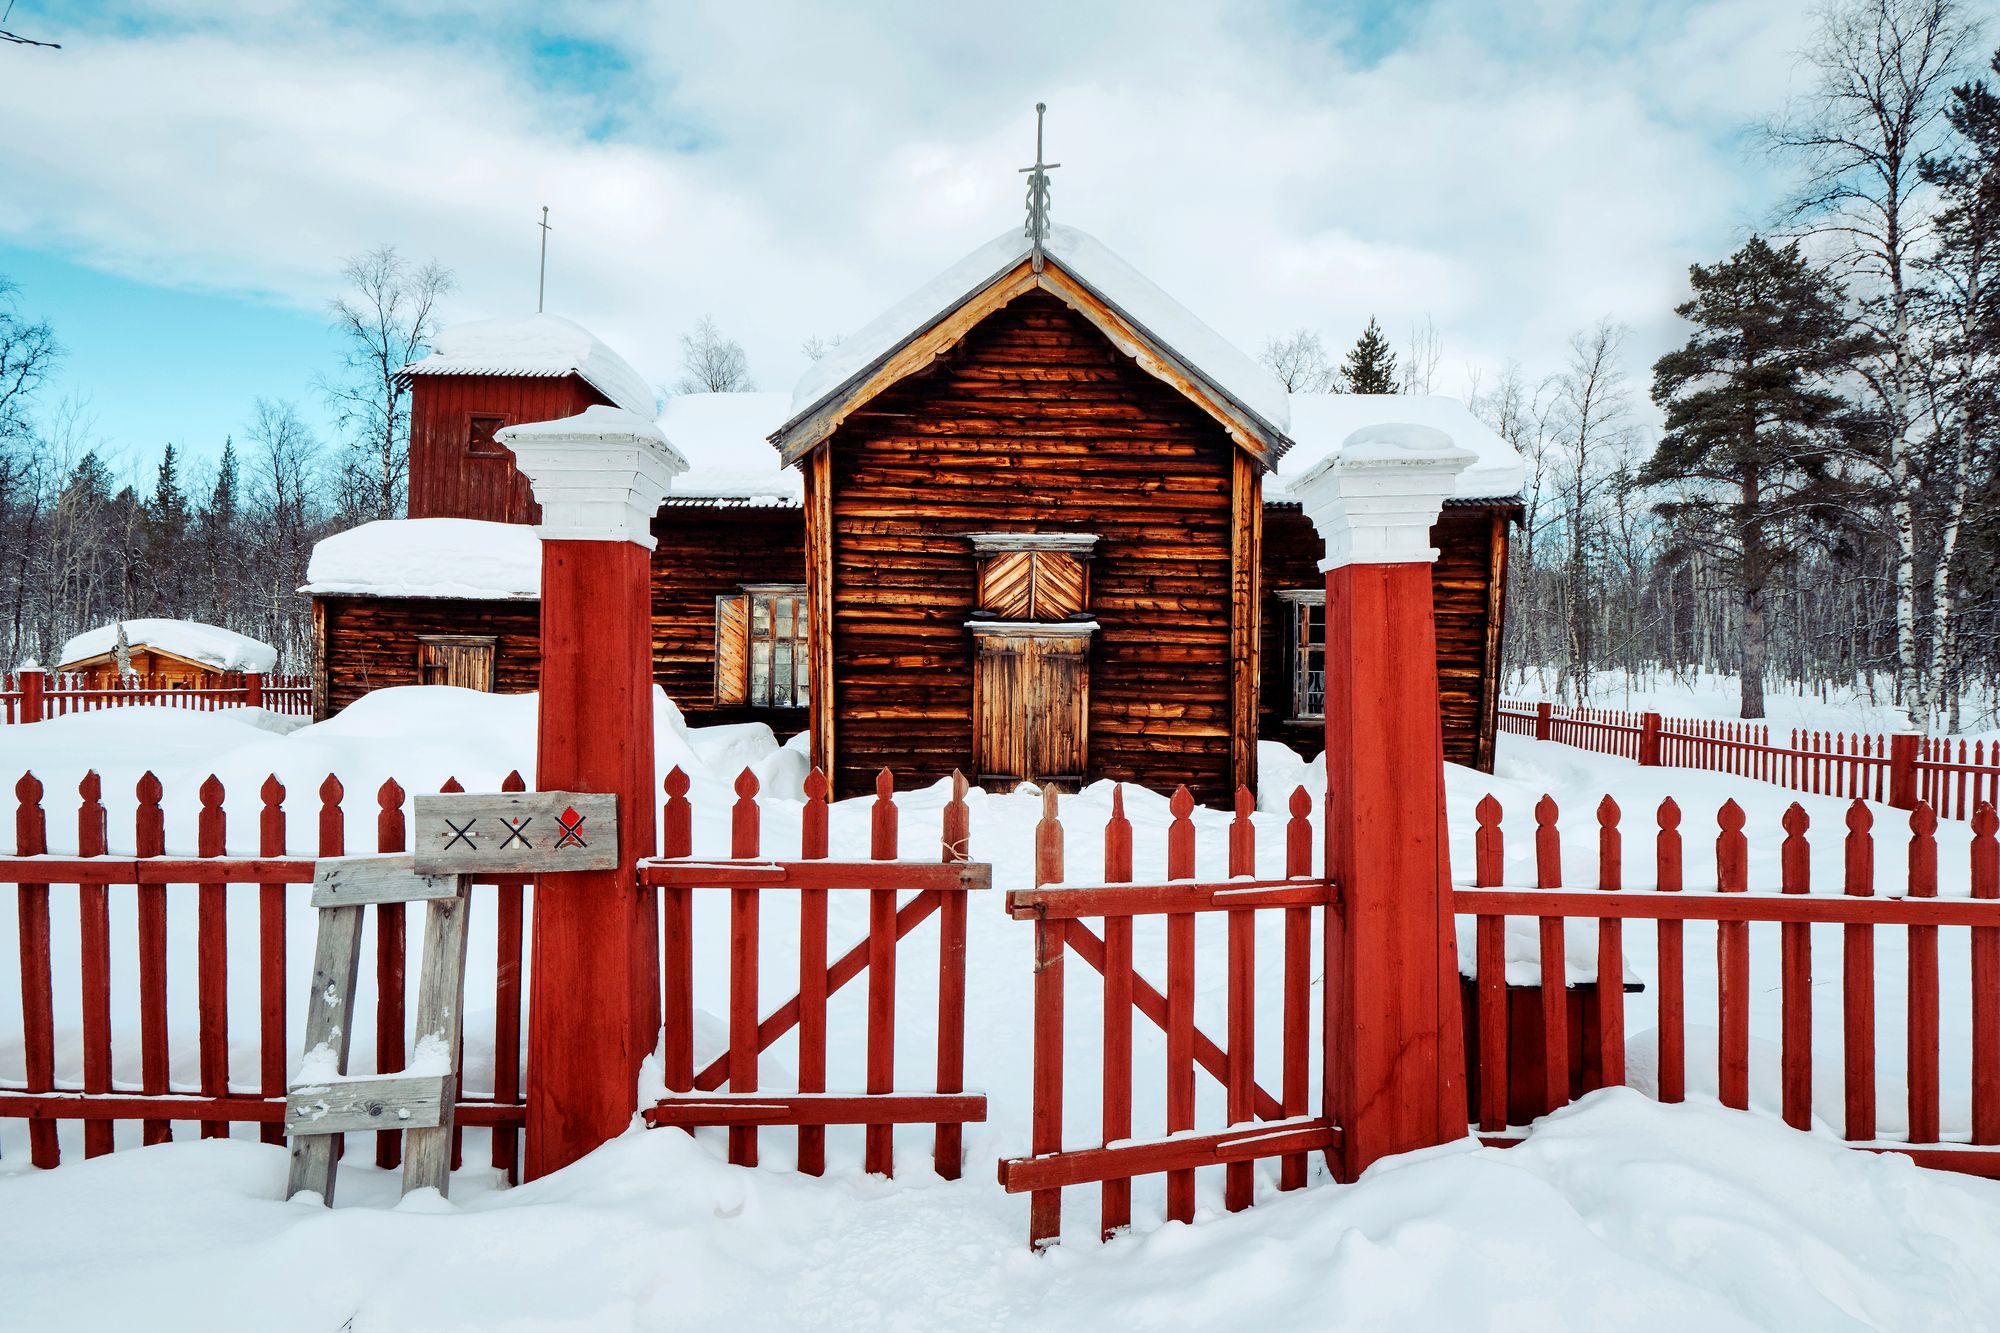 Erämaakirkolle ei mene tietä, sinne on muutamien kilometrien patikka- tai talvella hiihtomatka. © Pekka Numminen